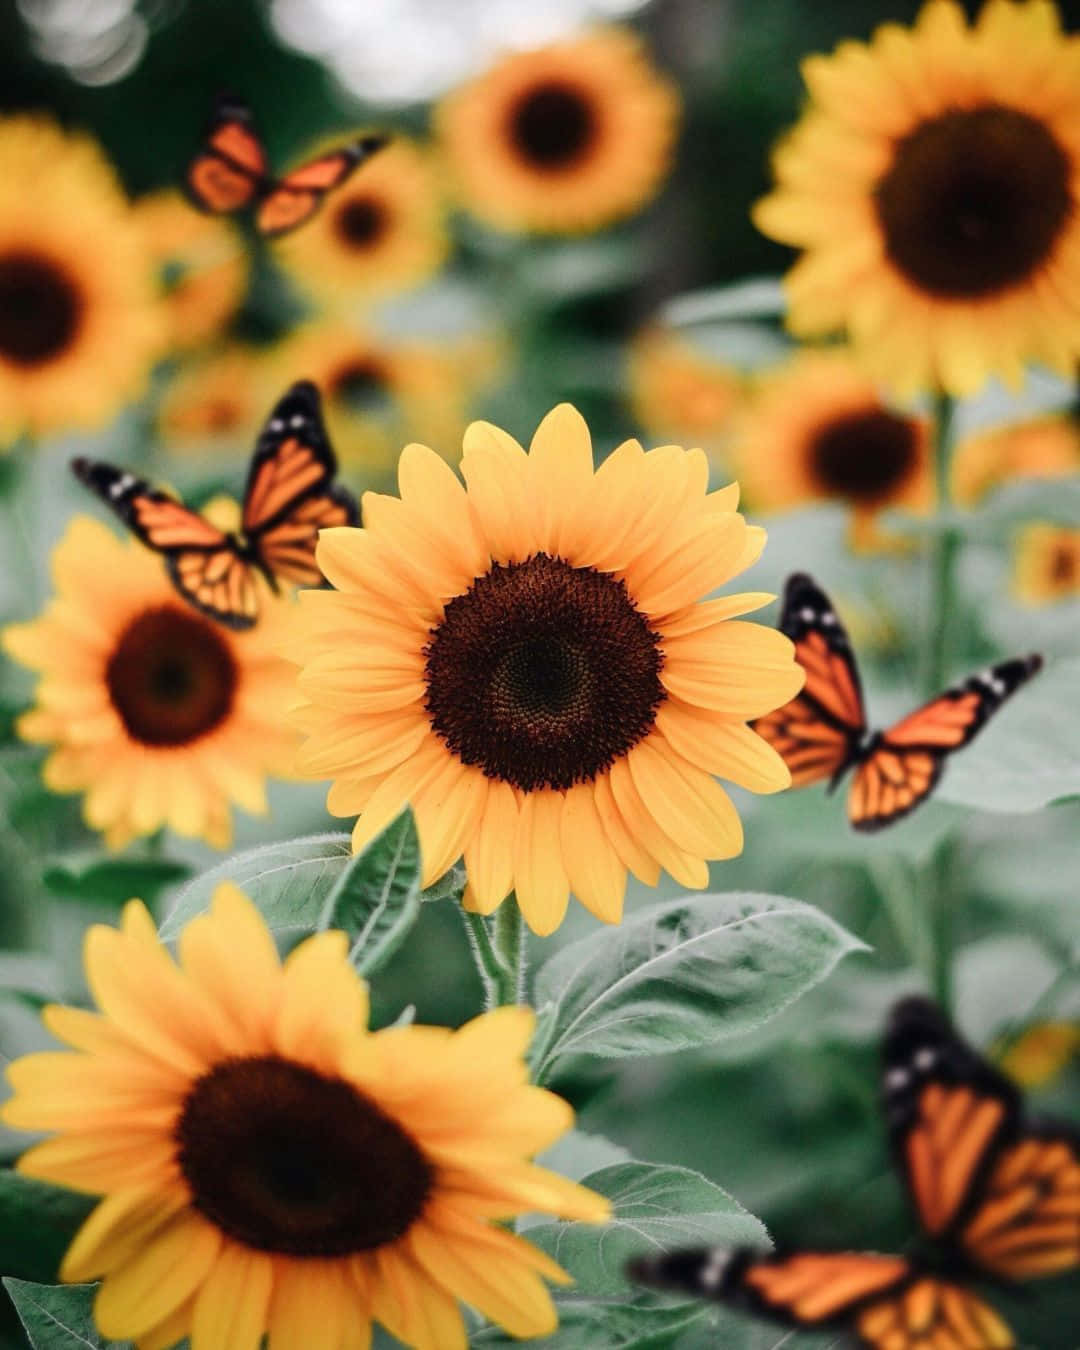 VSCO Butterflies til gule solsikker skaber en smukke og levende tekstur. Wallpaper